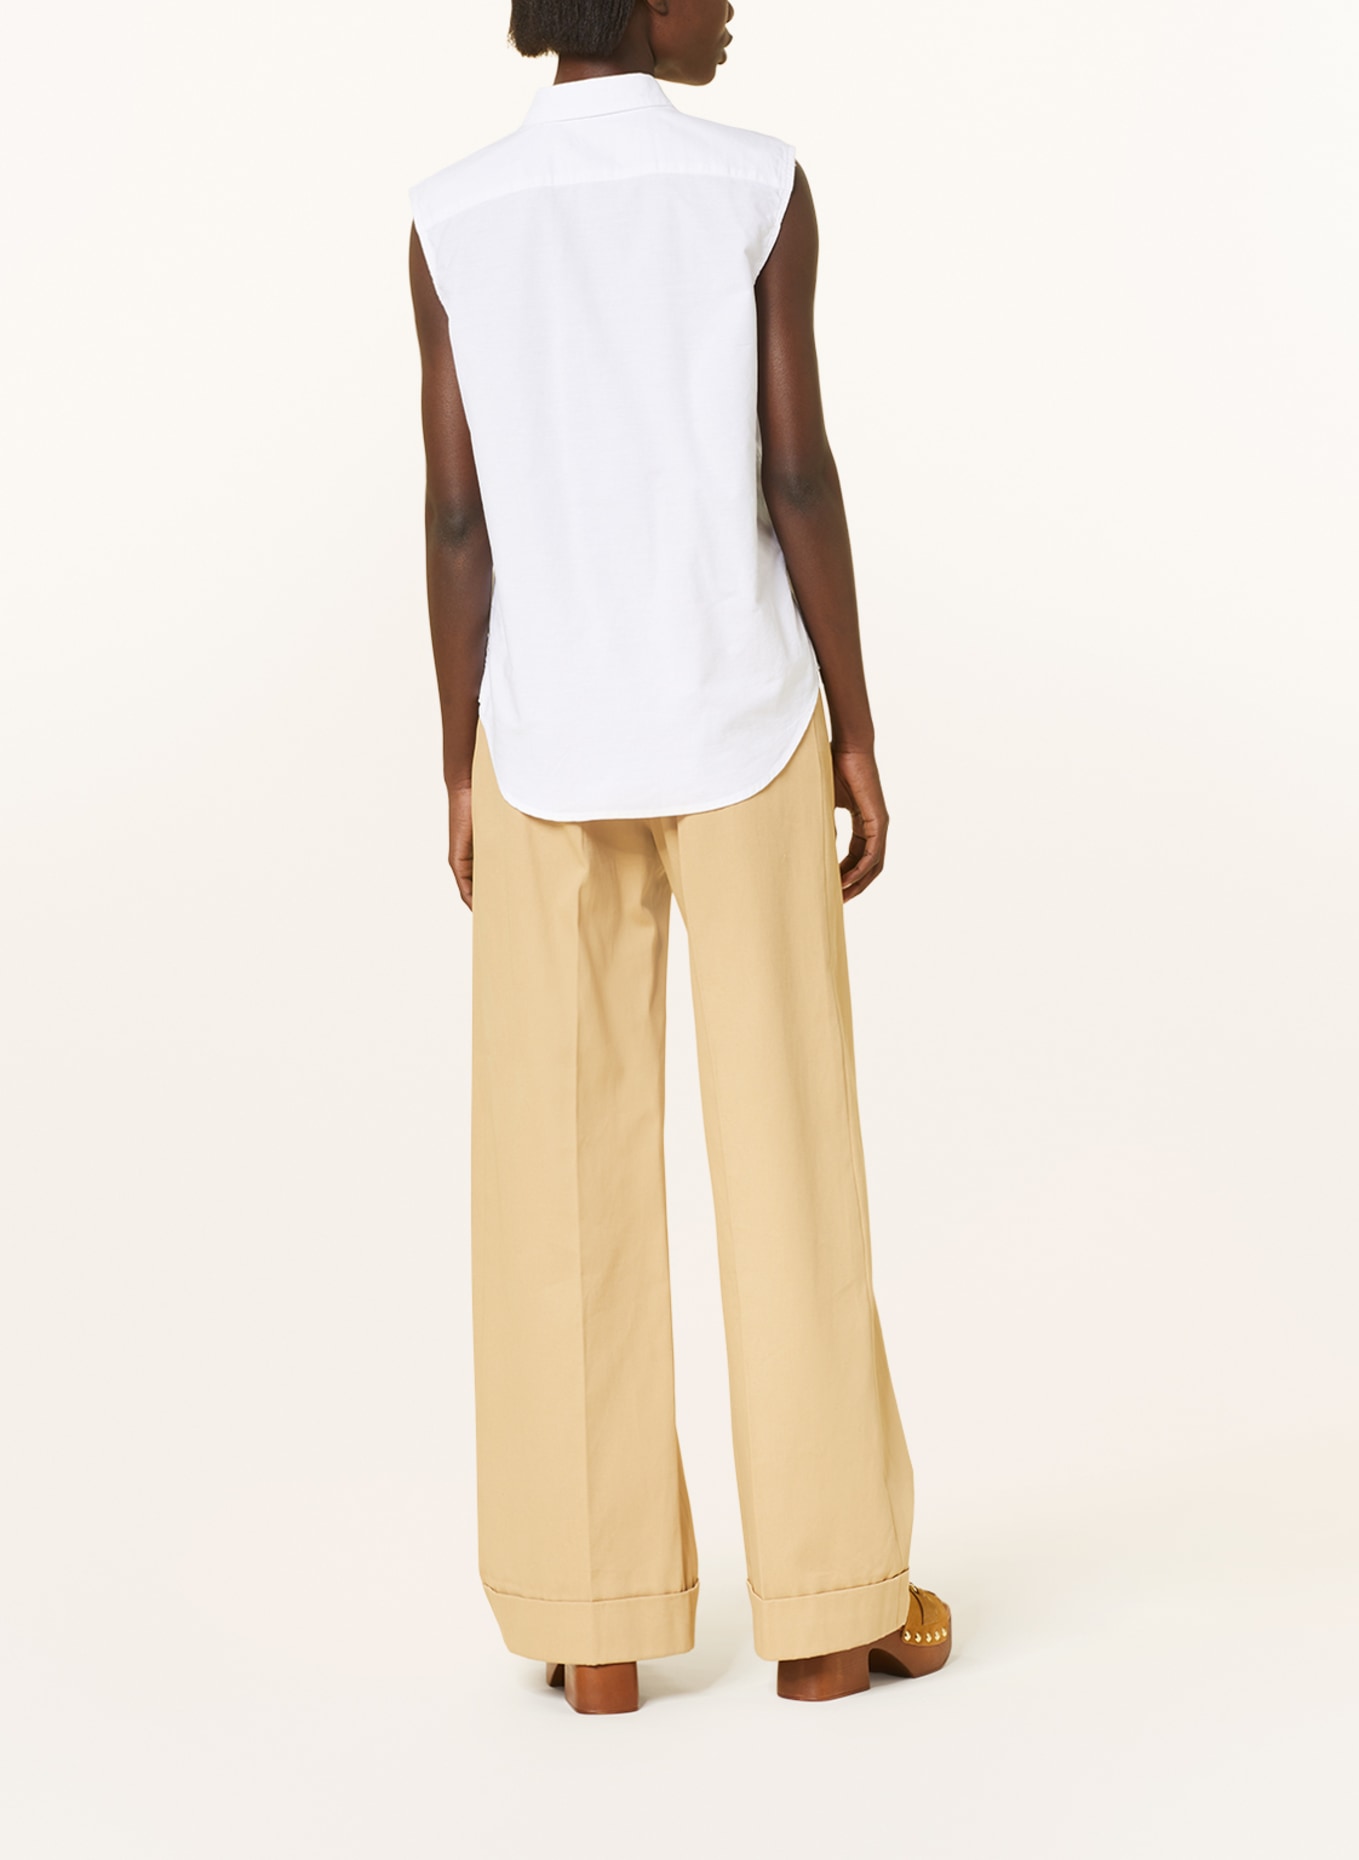 POLO RALPH LAUREN Shirt blouse, Color: WHITE (Image 3)